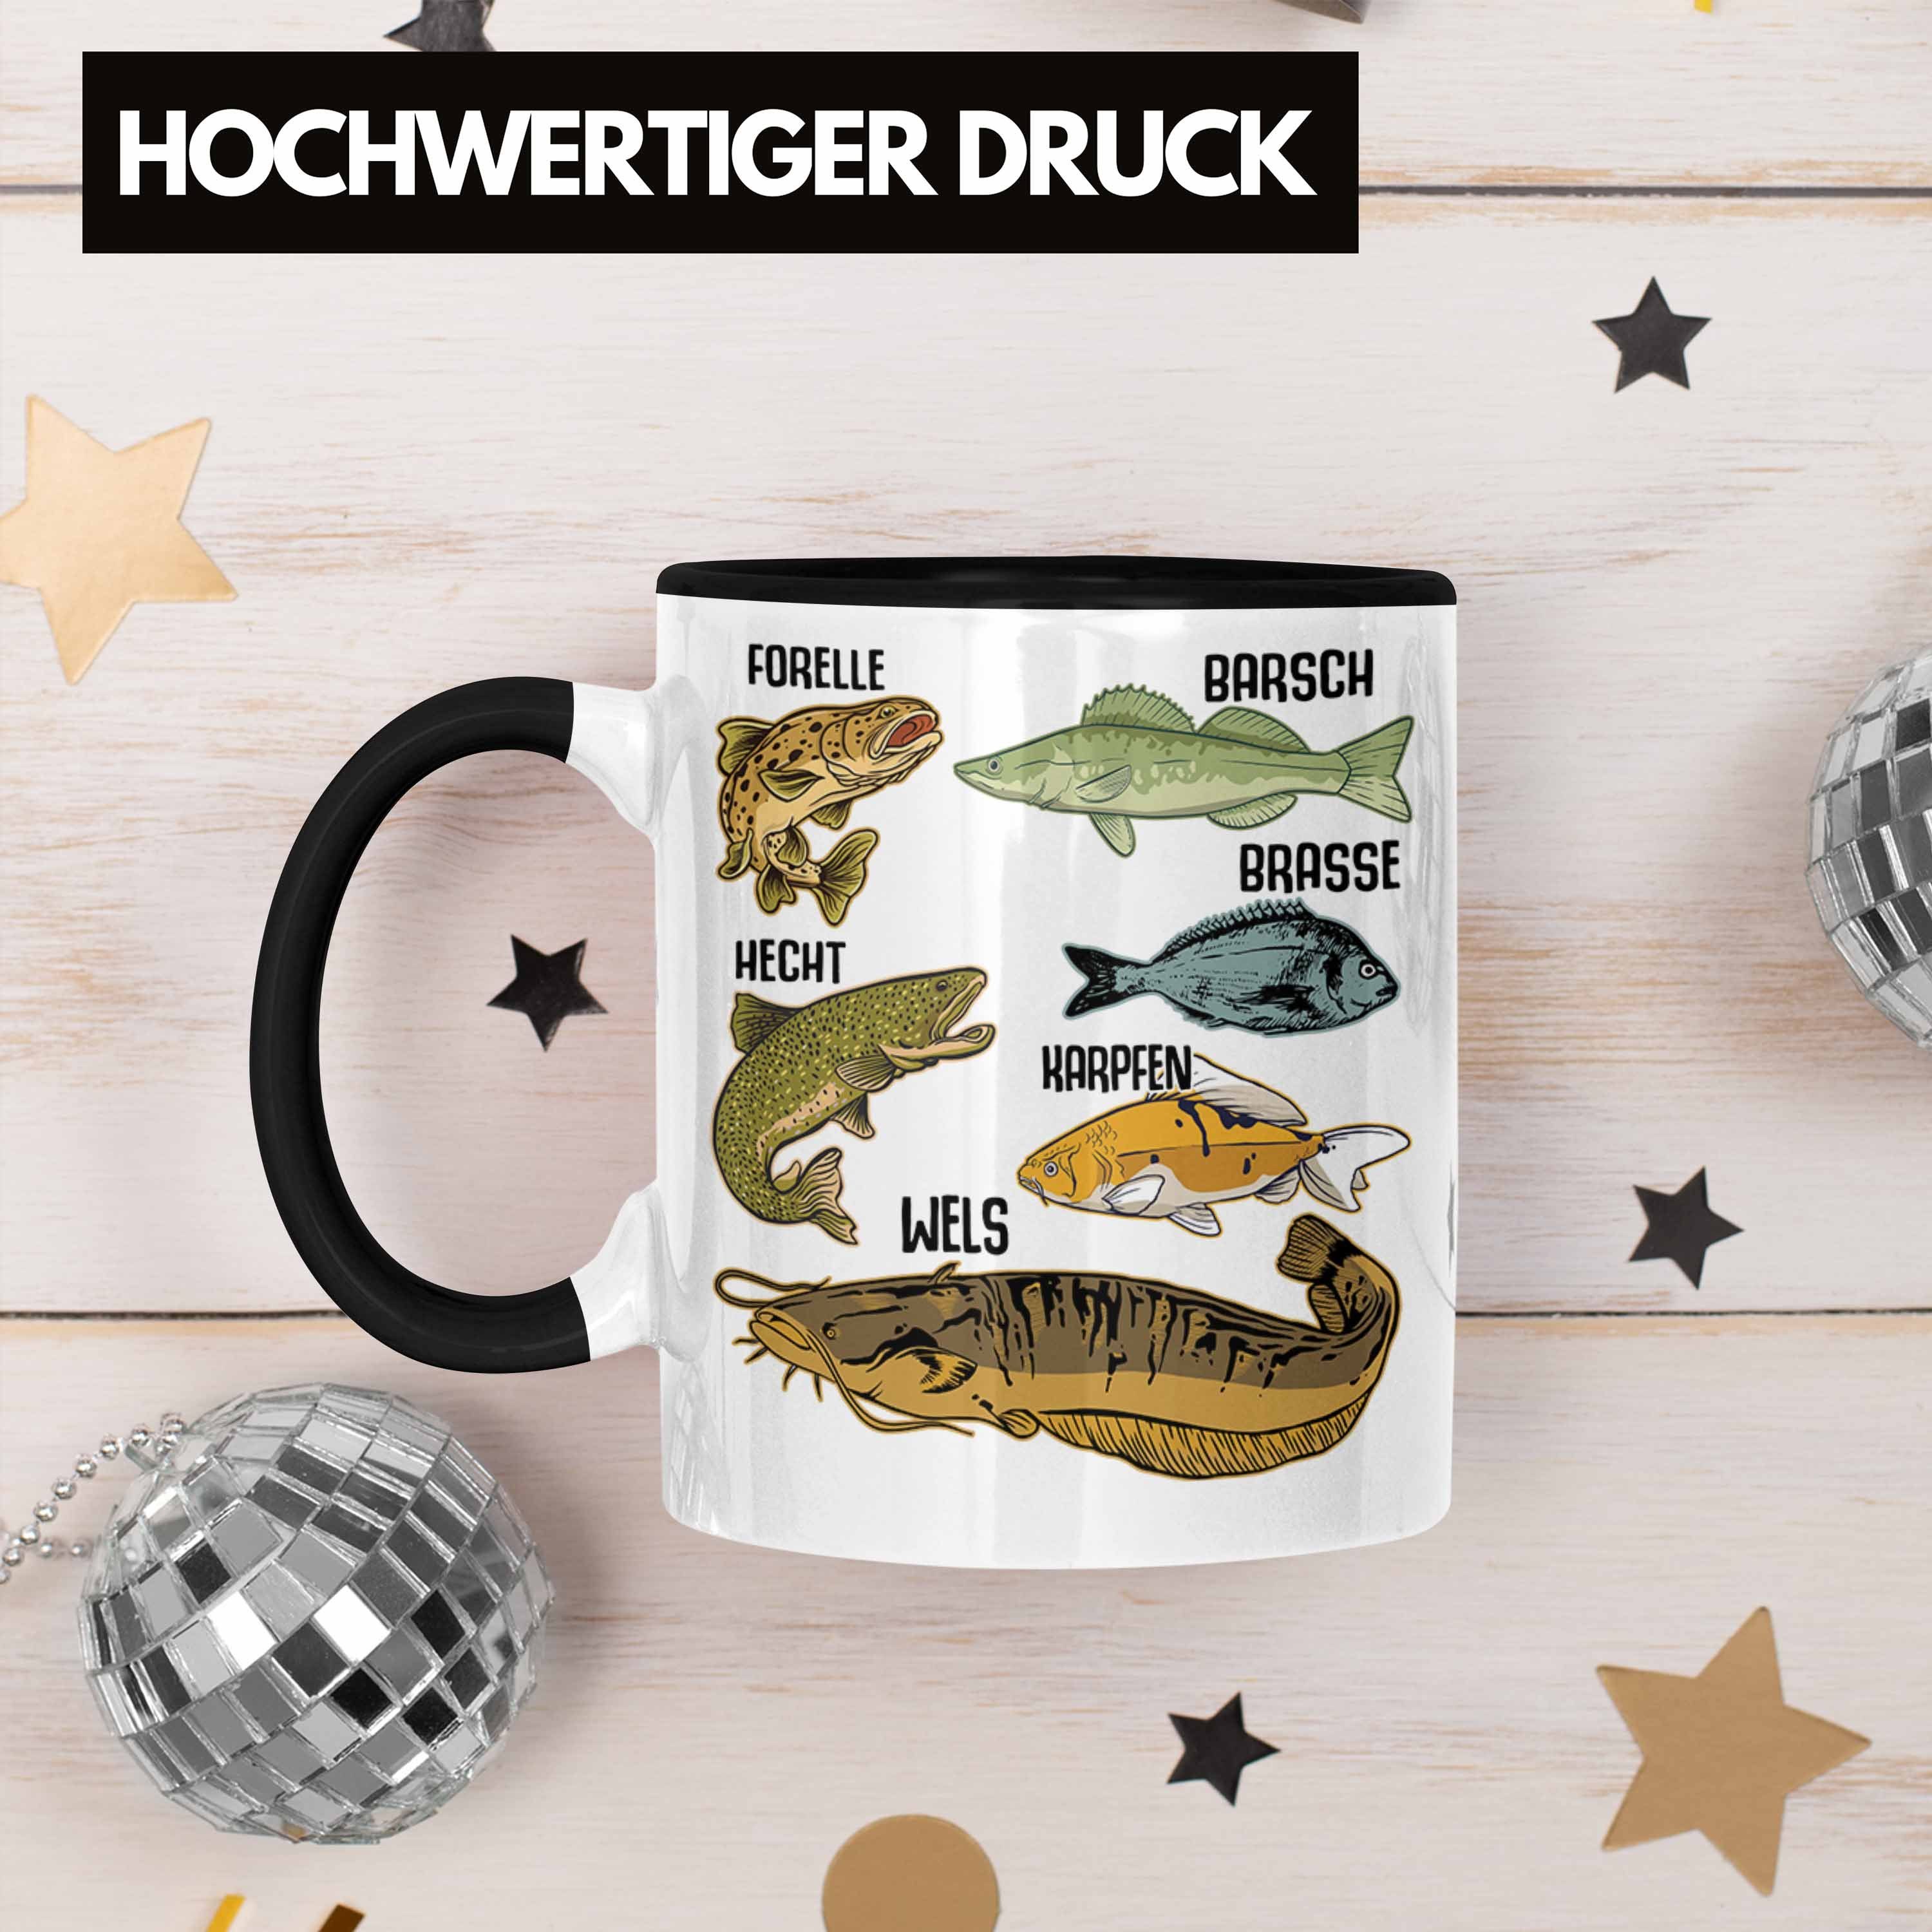 Hobbyangler Hecht Schwarz Trendation Barsch Trendation Fischer Forelle Angeln Fischarten - Raubfische Kaffeetasse mit Tasse Angler Tasse Geschenk